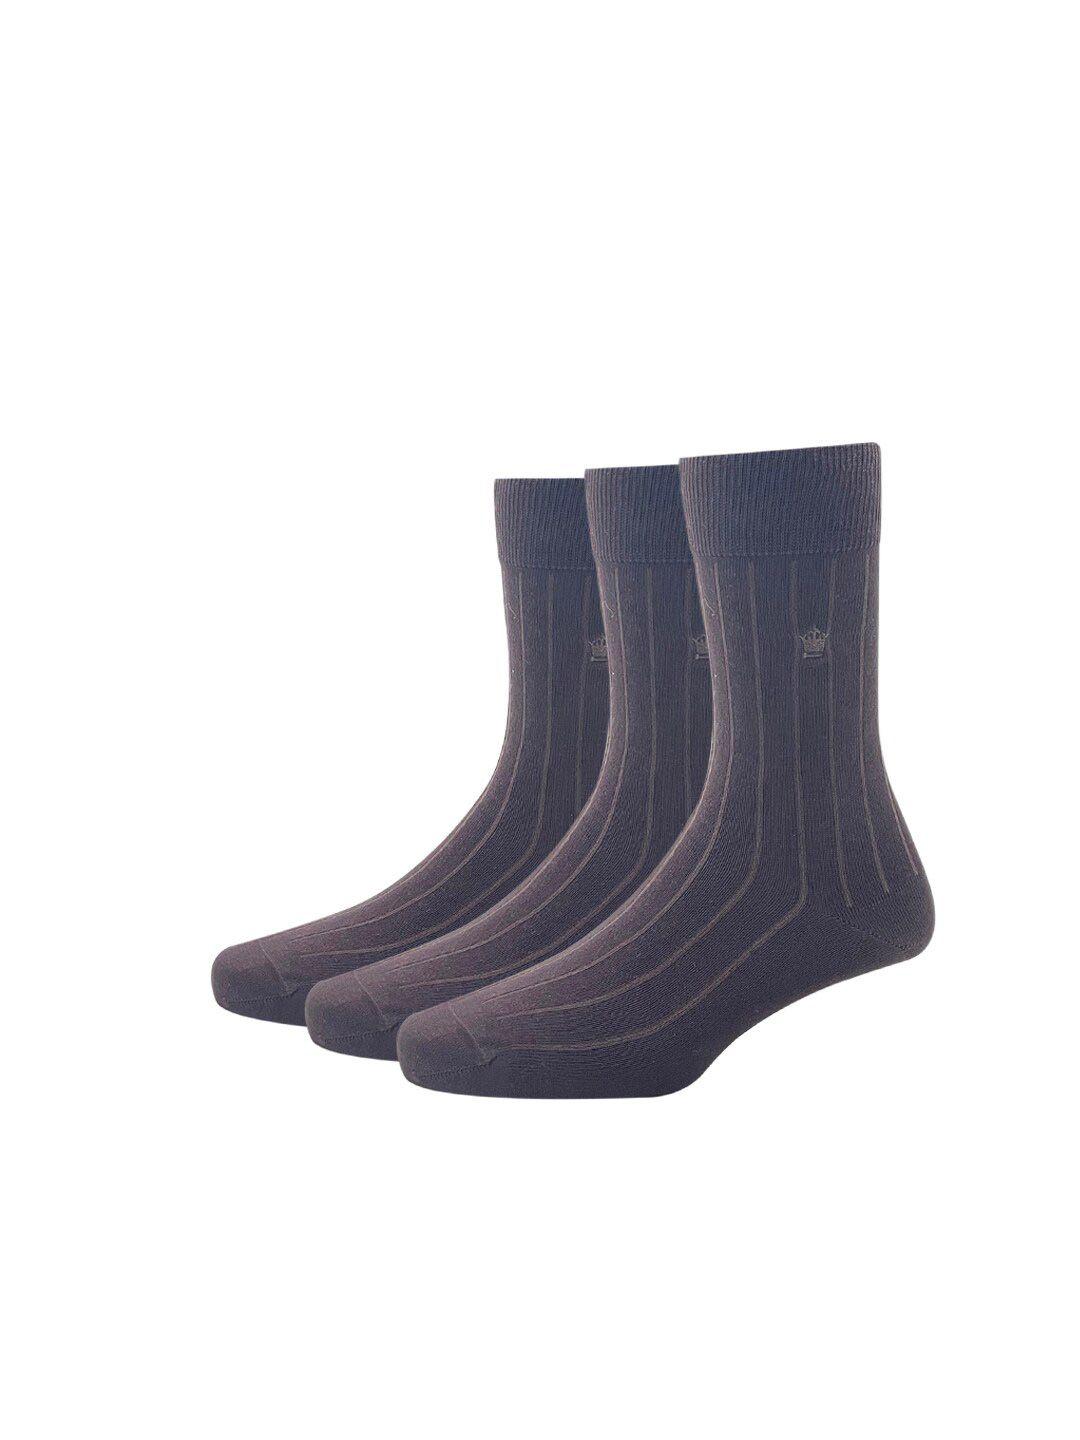 louis philippe men brown pack of 3 solid calf length socks